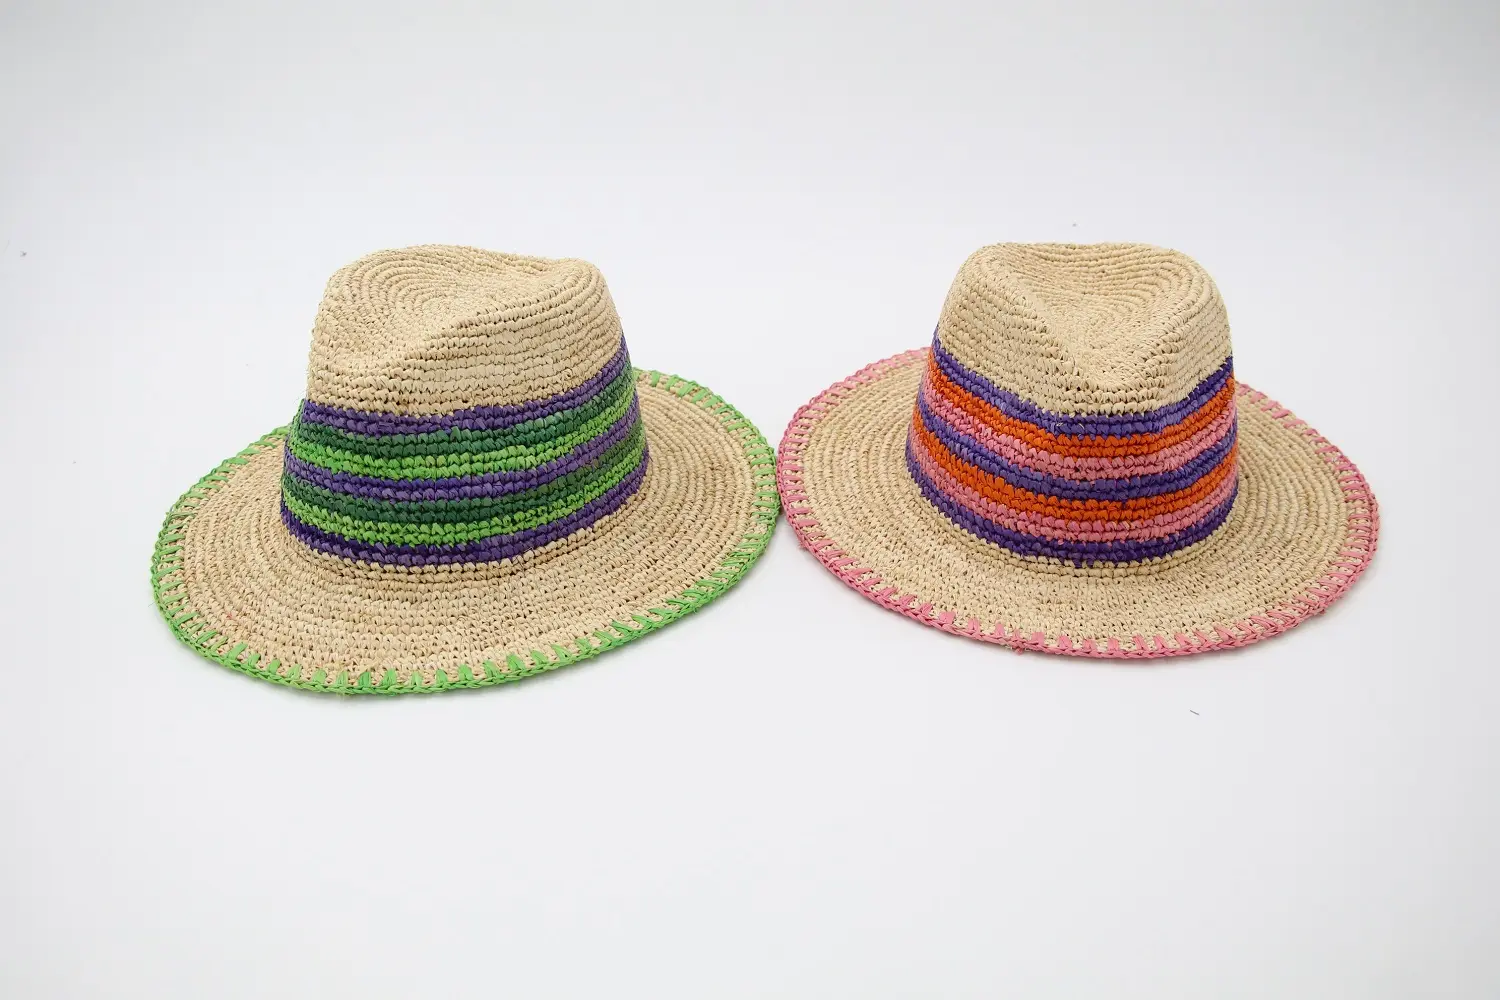 K 3 가지 색상 매칭 라피아 수제 크로 셰 뜨개질 넓은 챙 파나마 모자 남여 공용 휴가 해변 모자